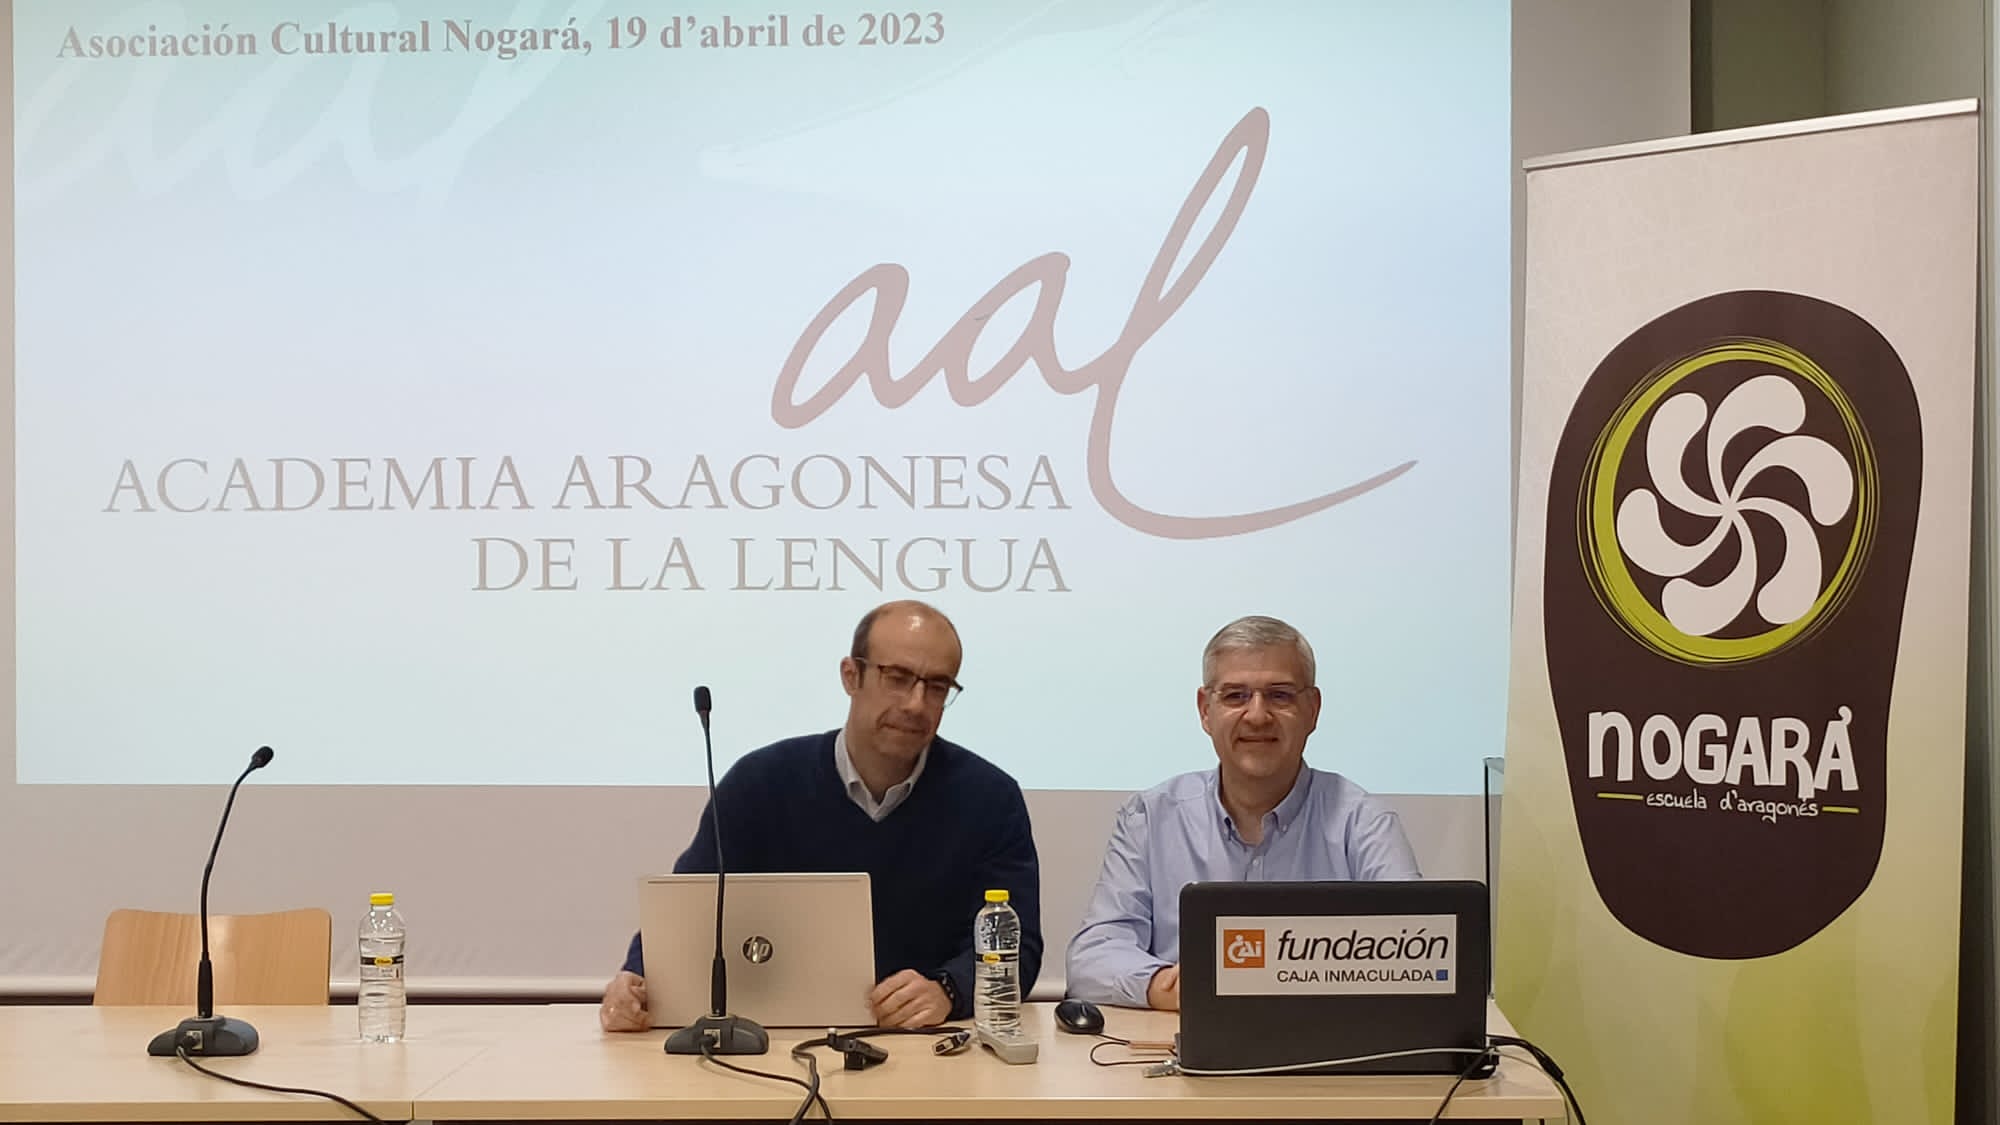 Entrevista amb Javier Giralt, president de l’Acadèmia Aragonesa de la Lenga : « Es un prètzfach istoric aver balhat un estandard ortografic a la lenga aragonesa »